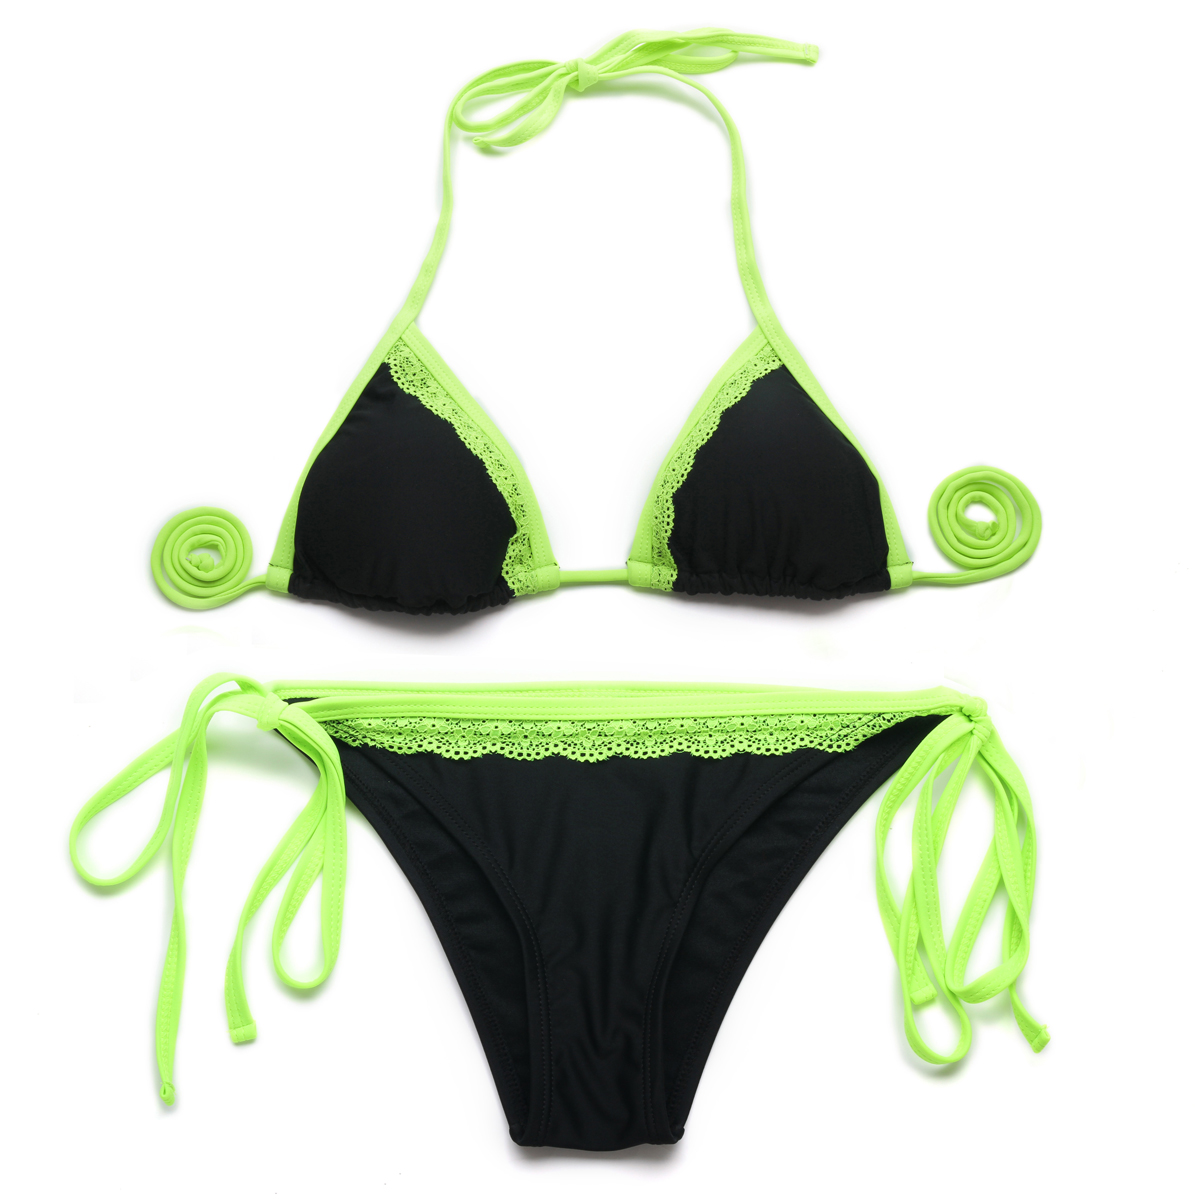 2015 Bikini Black + Green Lace Triangle Top With Classic Cut Bottom Bikini Swimwear